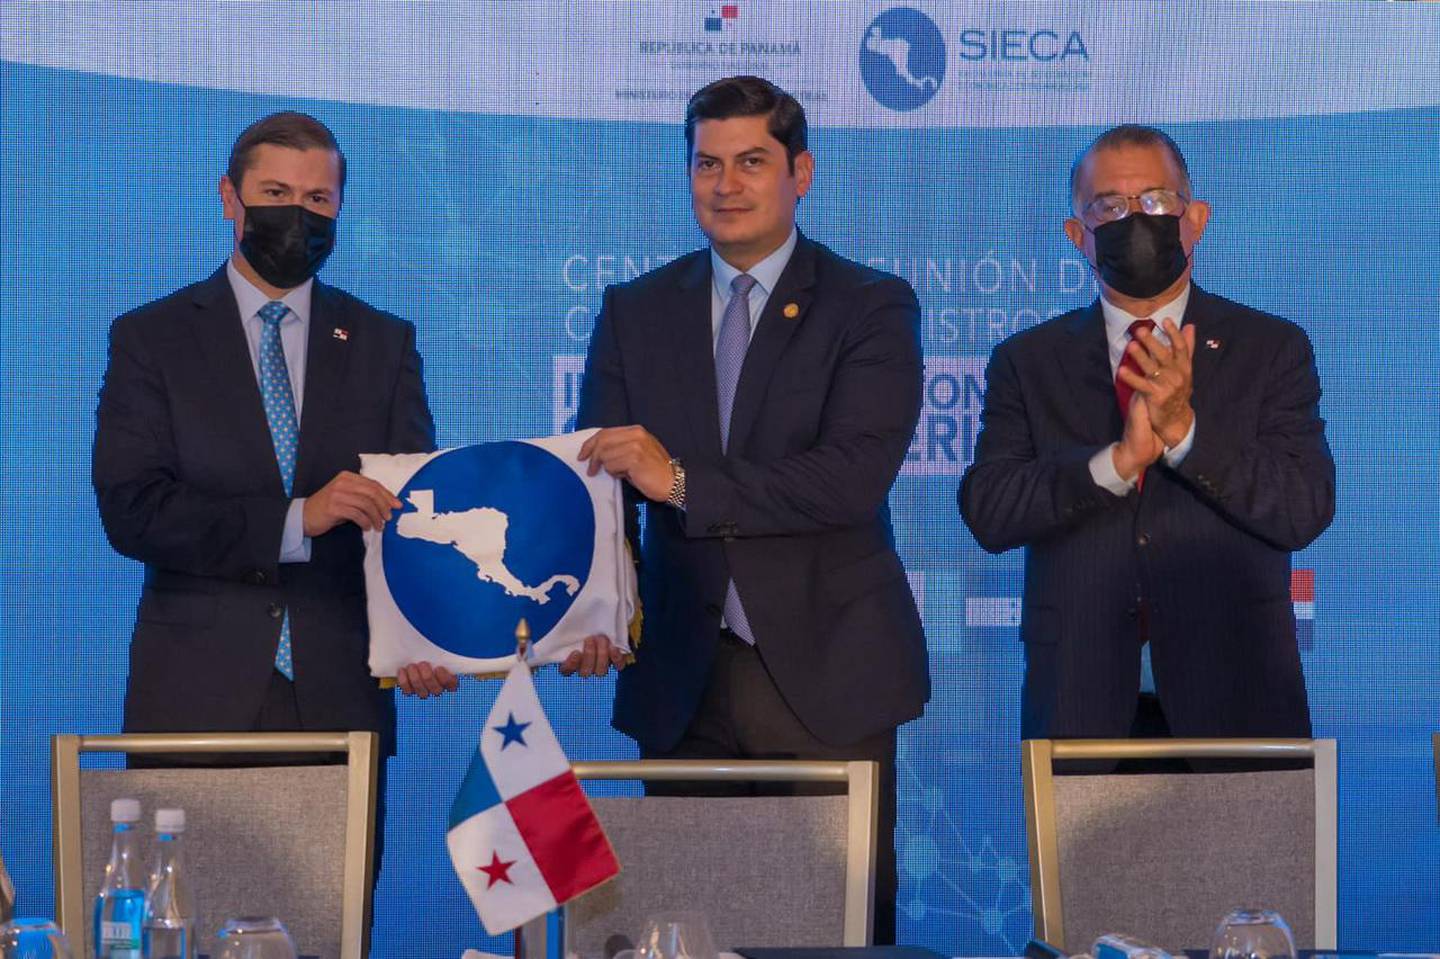 Janio Rosales, ministro de Economía de Guatemala (al centro) liderará la Comieco y del Subsistema de Integración Económica Centroamericana.dfd